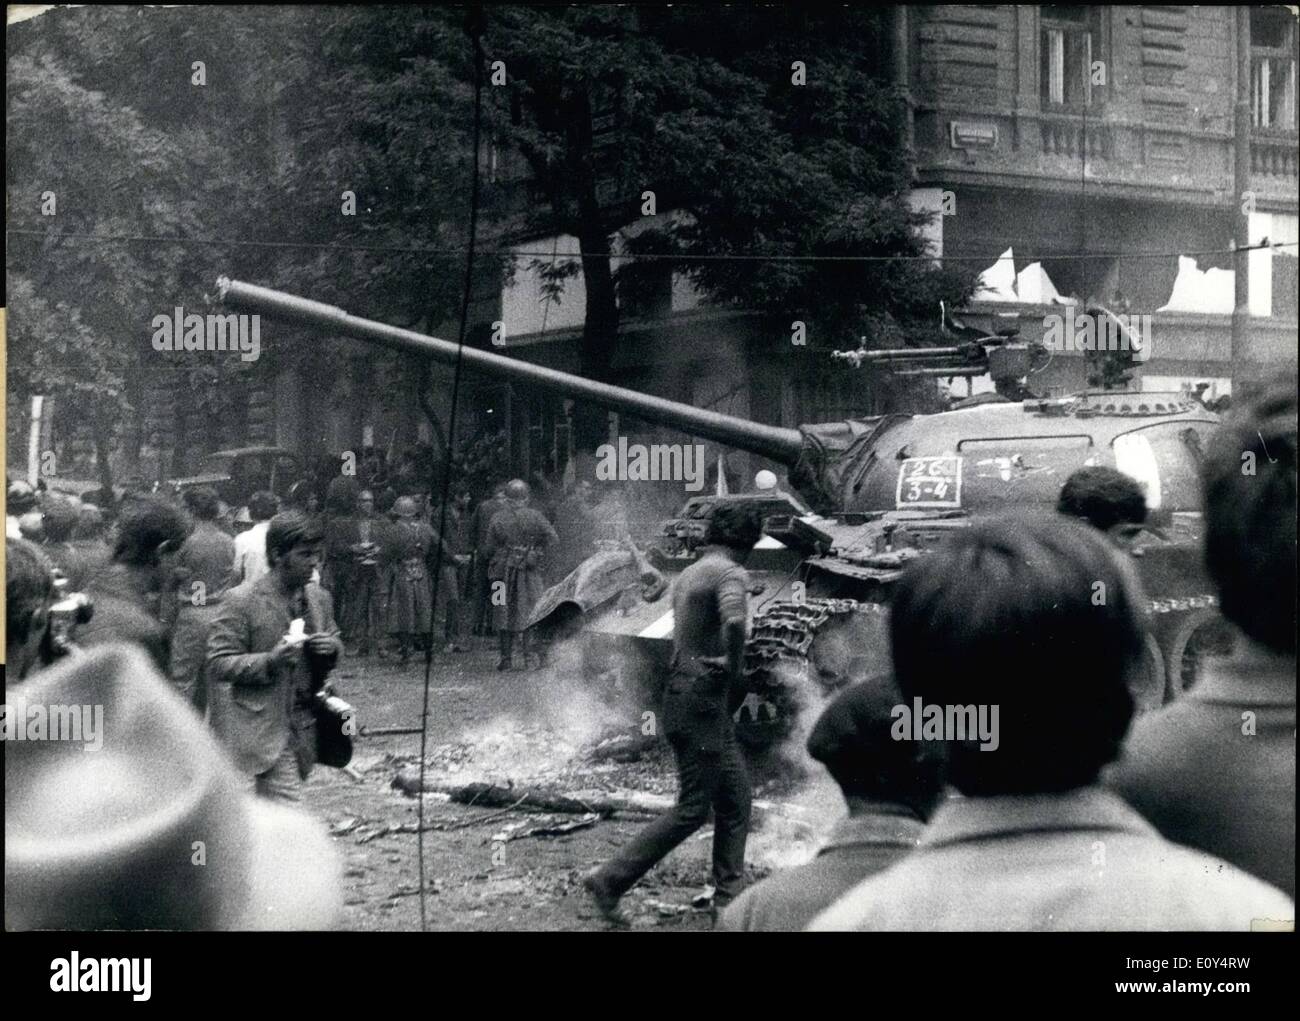 8. August 1968 - CSSR von östlichen Truppen besetzt; In der Nacht vom 20. zum 21. August 1968 besetzten Truppen der Warschauer-Pakt-Staaten Tschechoslowakei. Überall im Land und insbesondere in Prag zeigen die Bevölkerung gegen die Besatzung. Foto zeigt einen der sowjetischen Panzer im Zentrum von Prag. Stockfoto